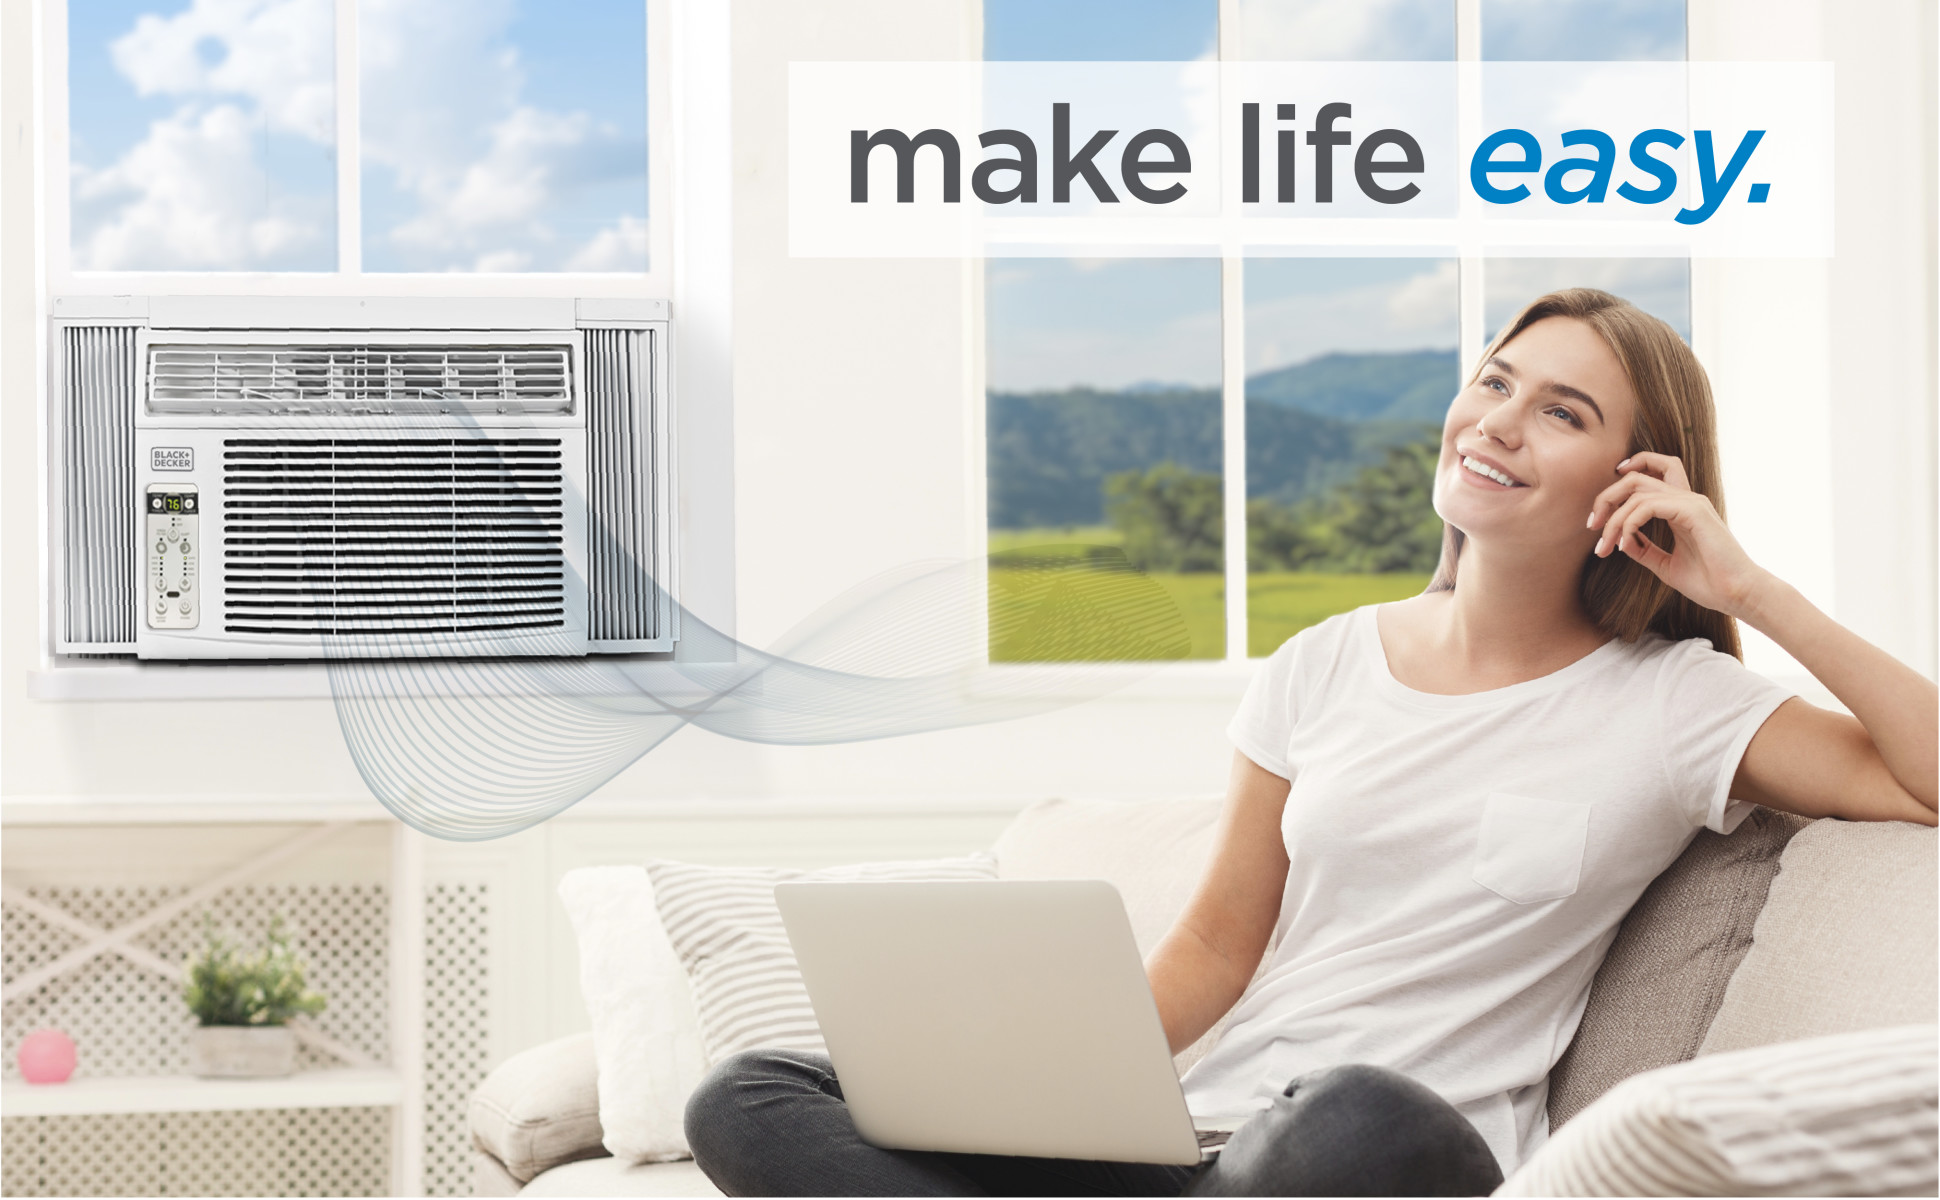 Black + Decker 10,000 Btu Window Air Conditioner, Air Conditioners, Furniture & Appliances